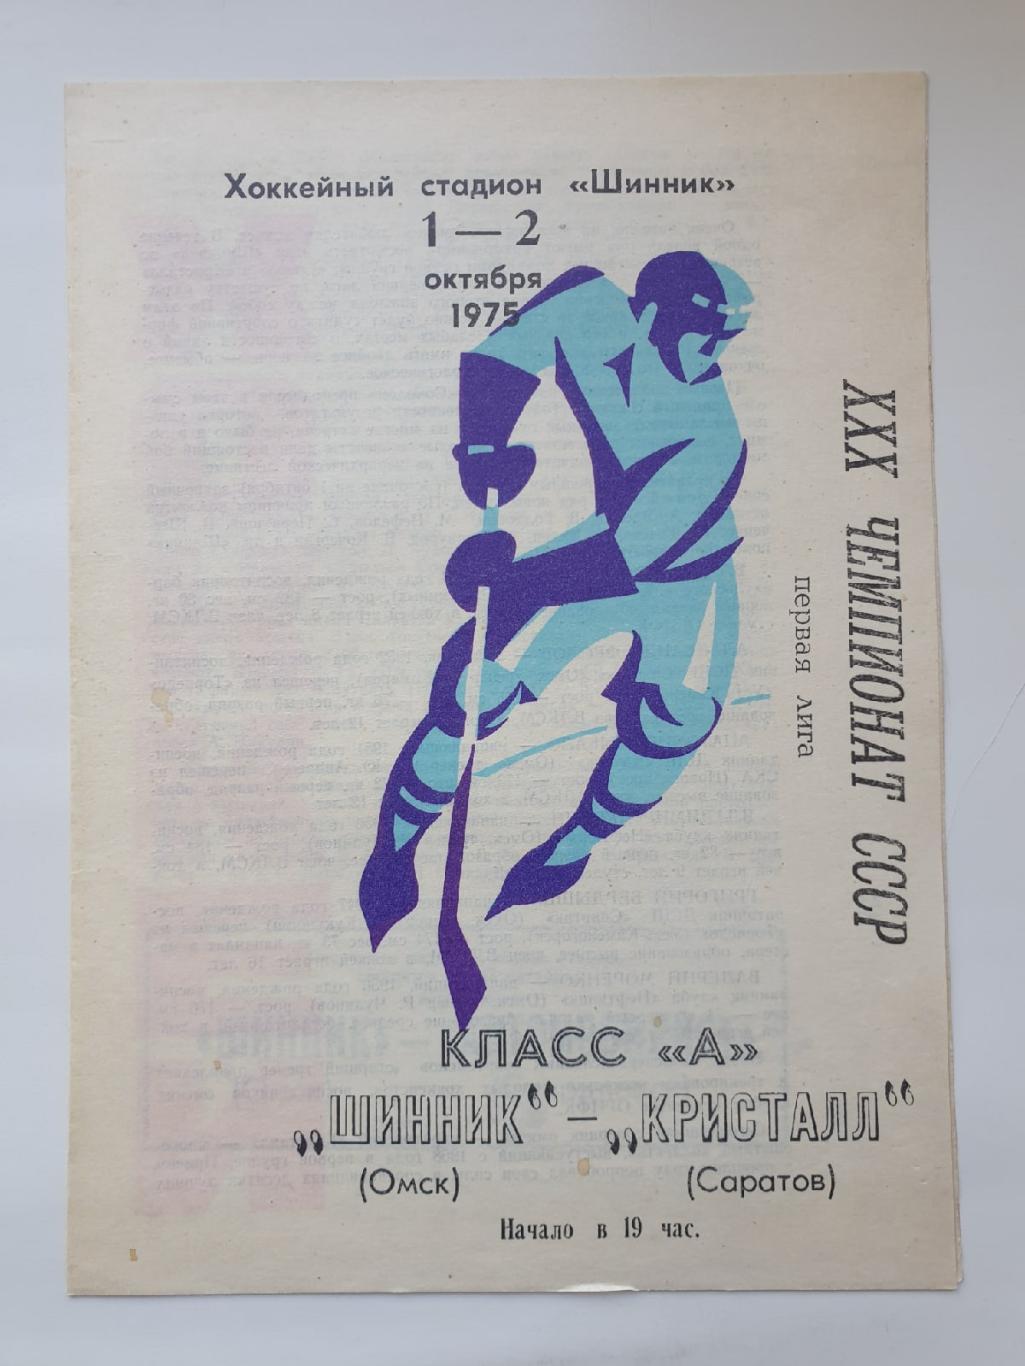 Шинник Омск - Кристалл Саратов 1/2 октября 1975